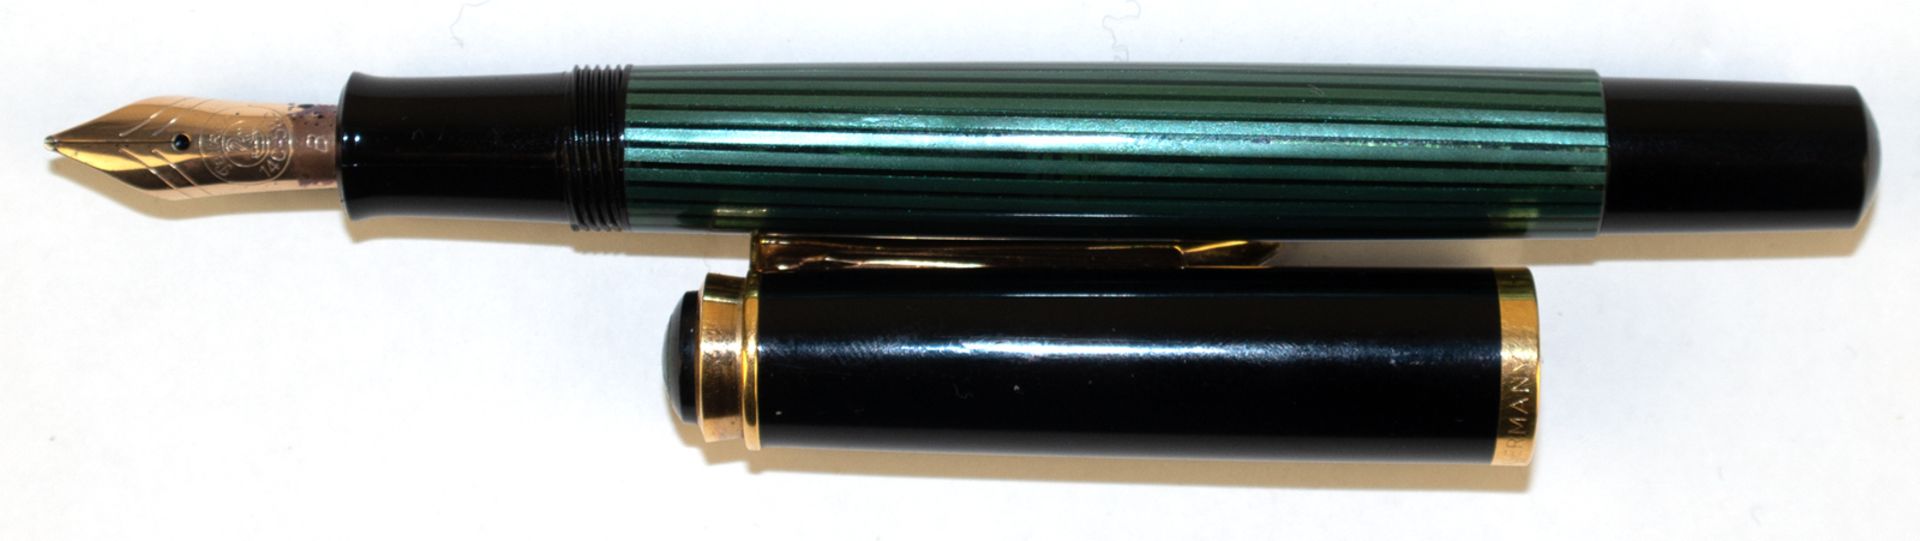 Füller "Pelikan 400", mit 585er GG-Feder, schwarz/grünes Kunststoffgehäuse, L. 12,5 cm